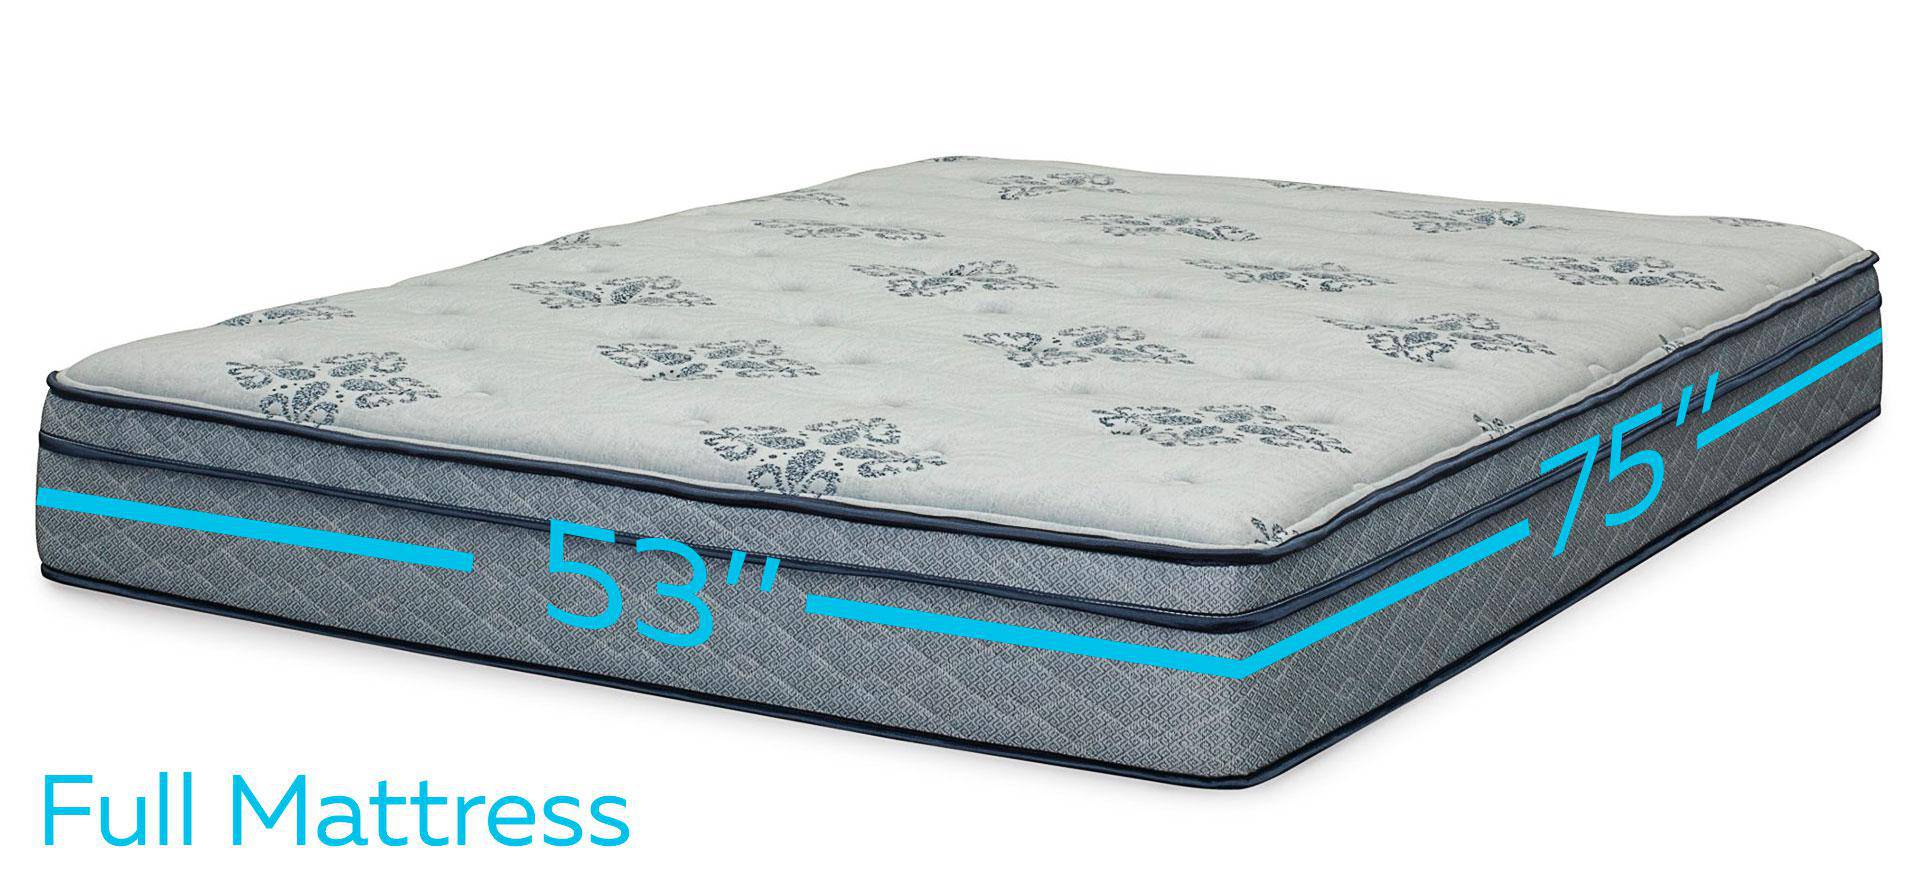 Full size mattress dimensions.